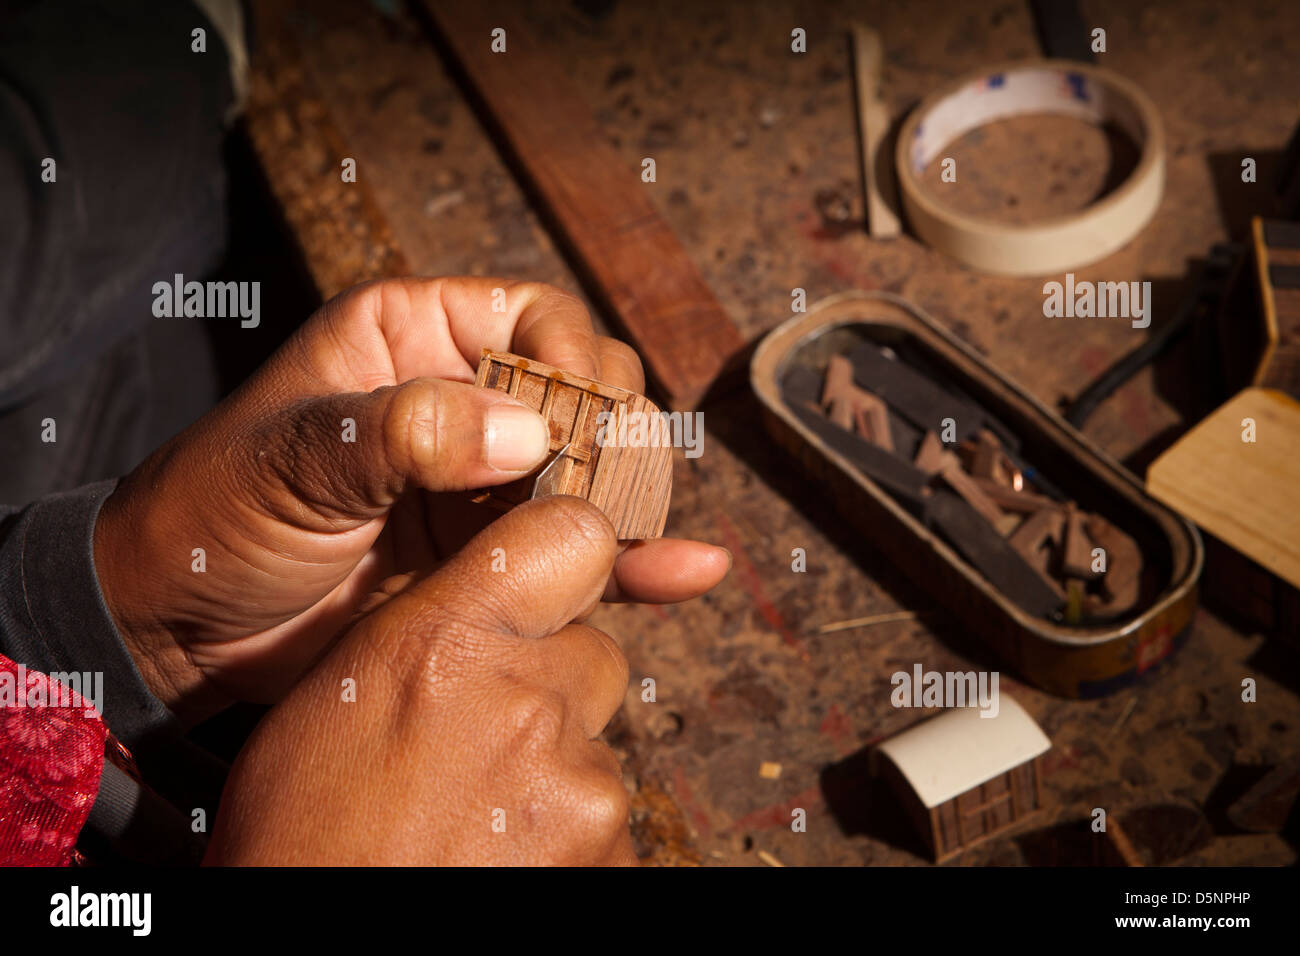 Madagascar, Antananarivo, de l'artisanat, le village miniature de l'artisan, atelier de fabrication de mains Banque D'Images